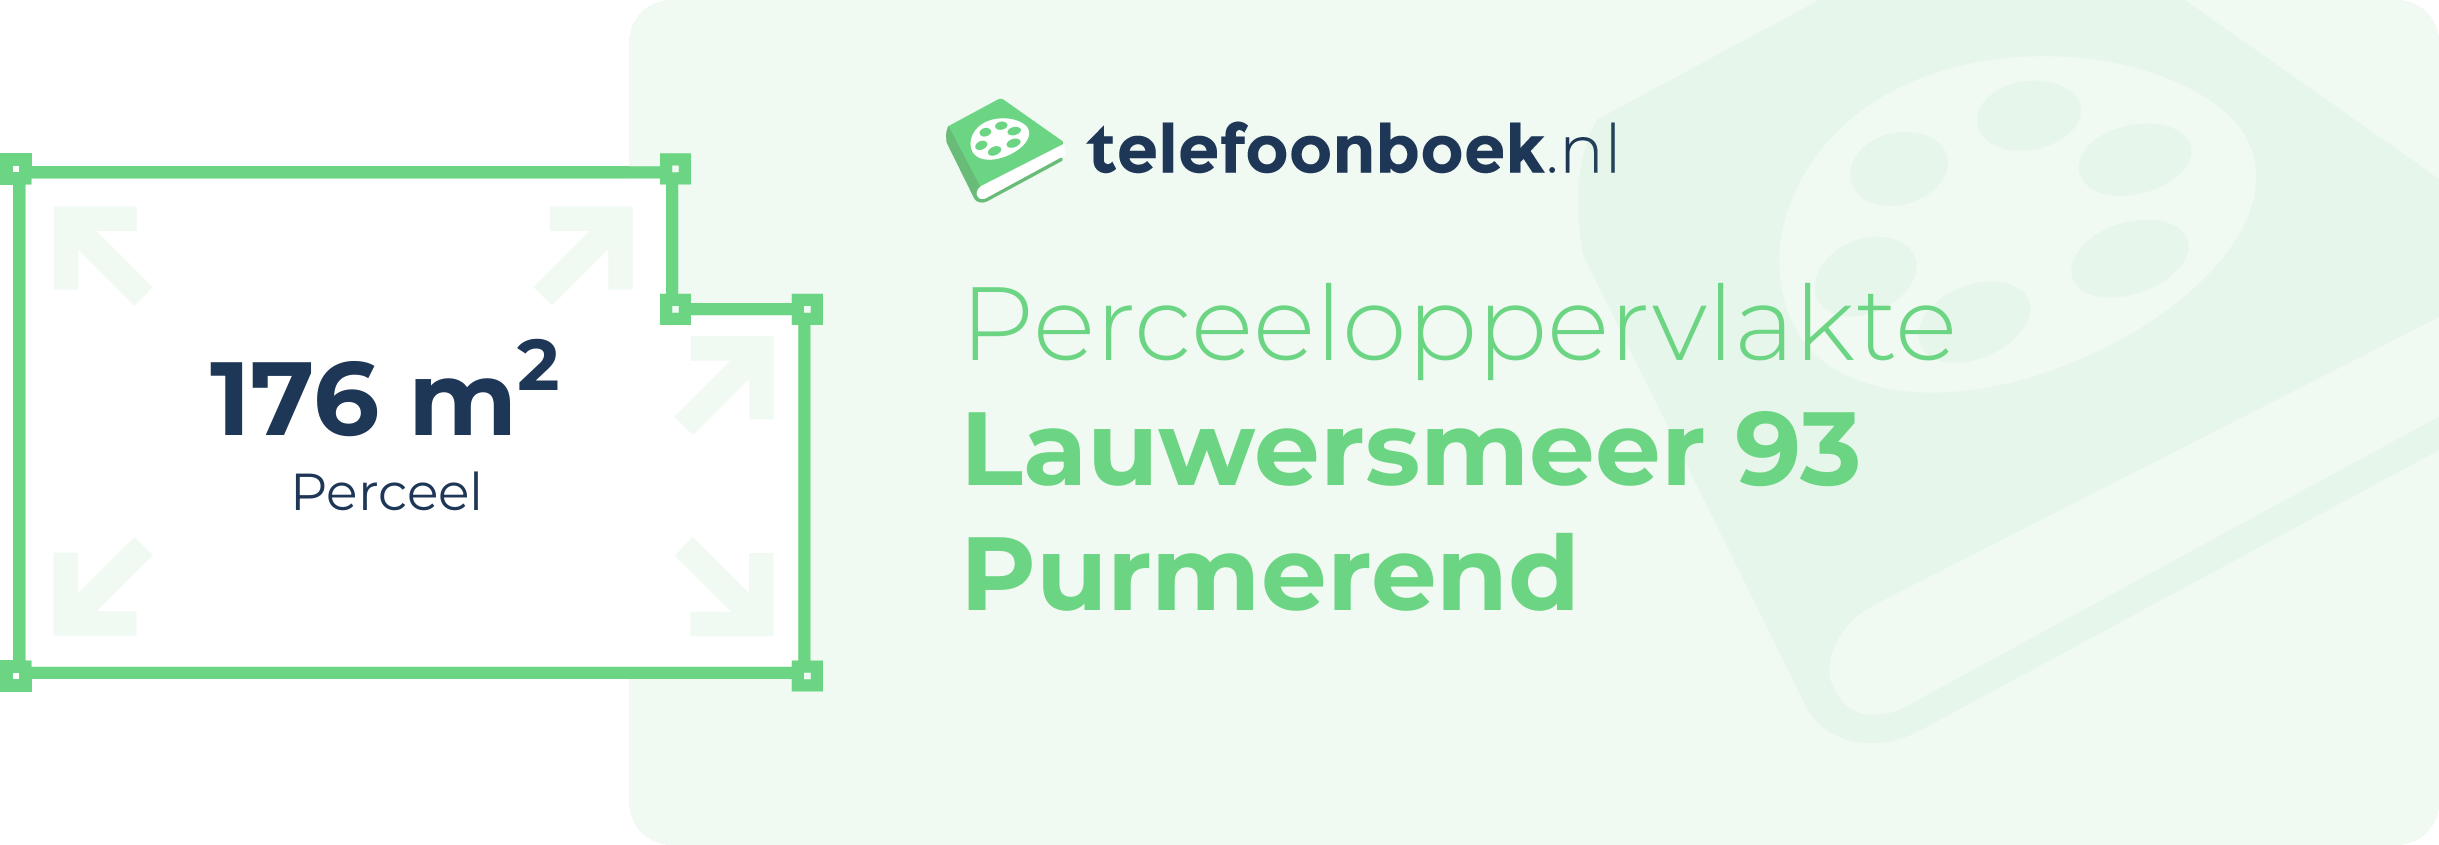 Perceeloppervlakte Lauwersmeer 93 Purmerend